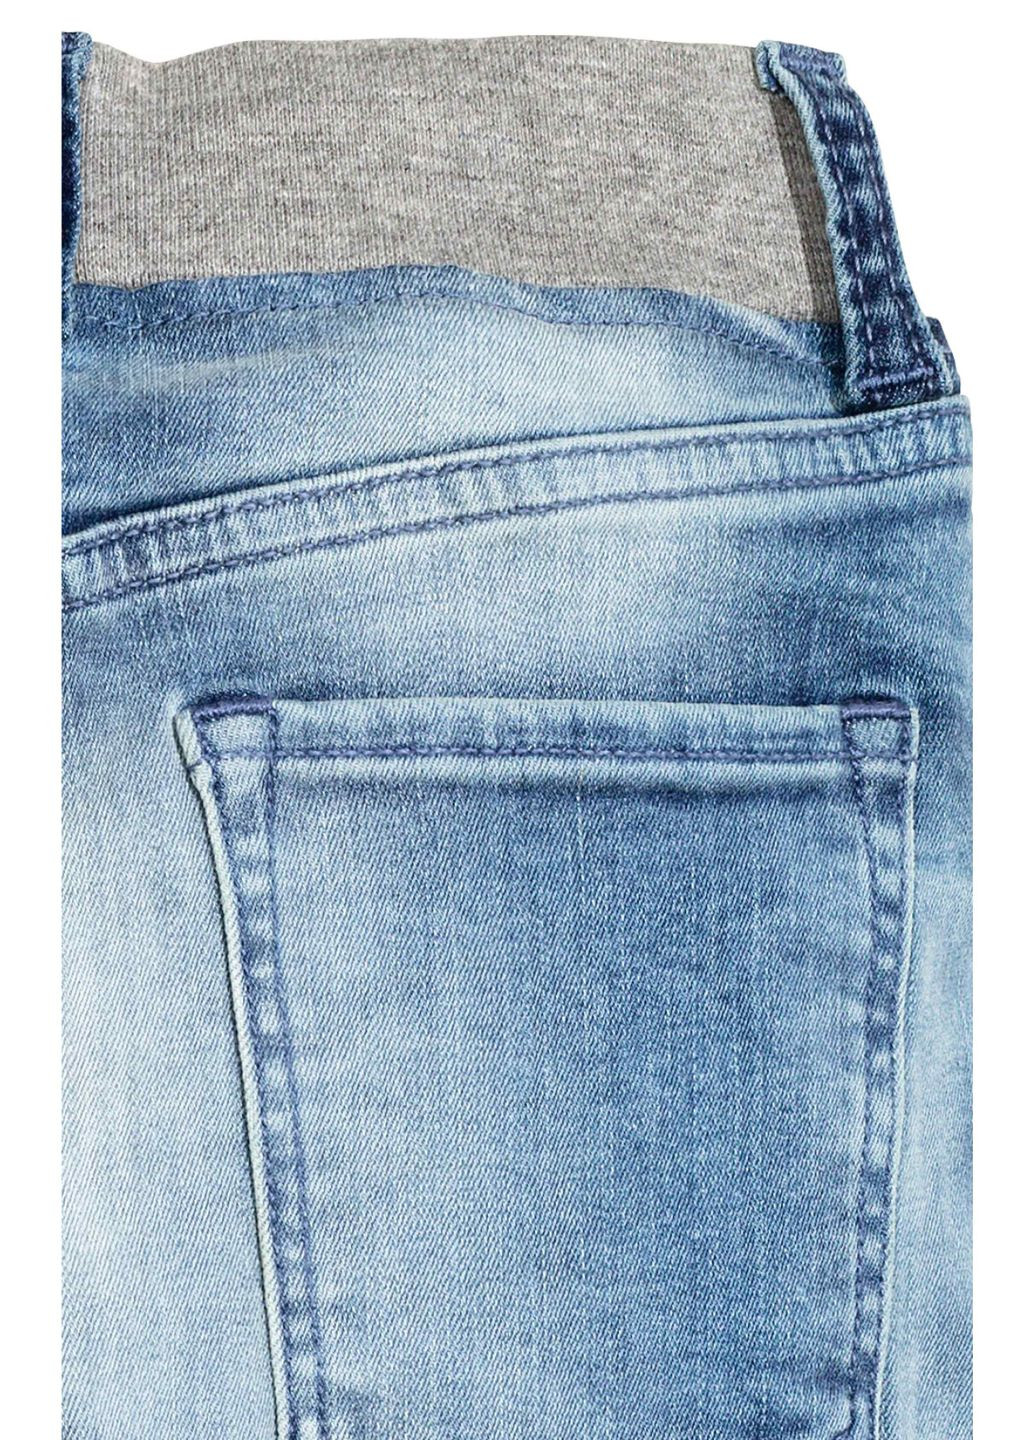 Синие джинсы демисезон,синий-серый, H&M